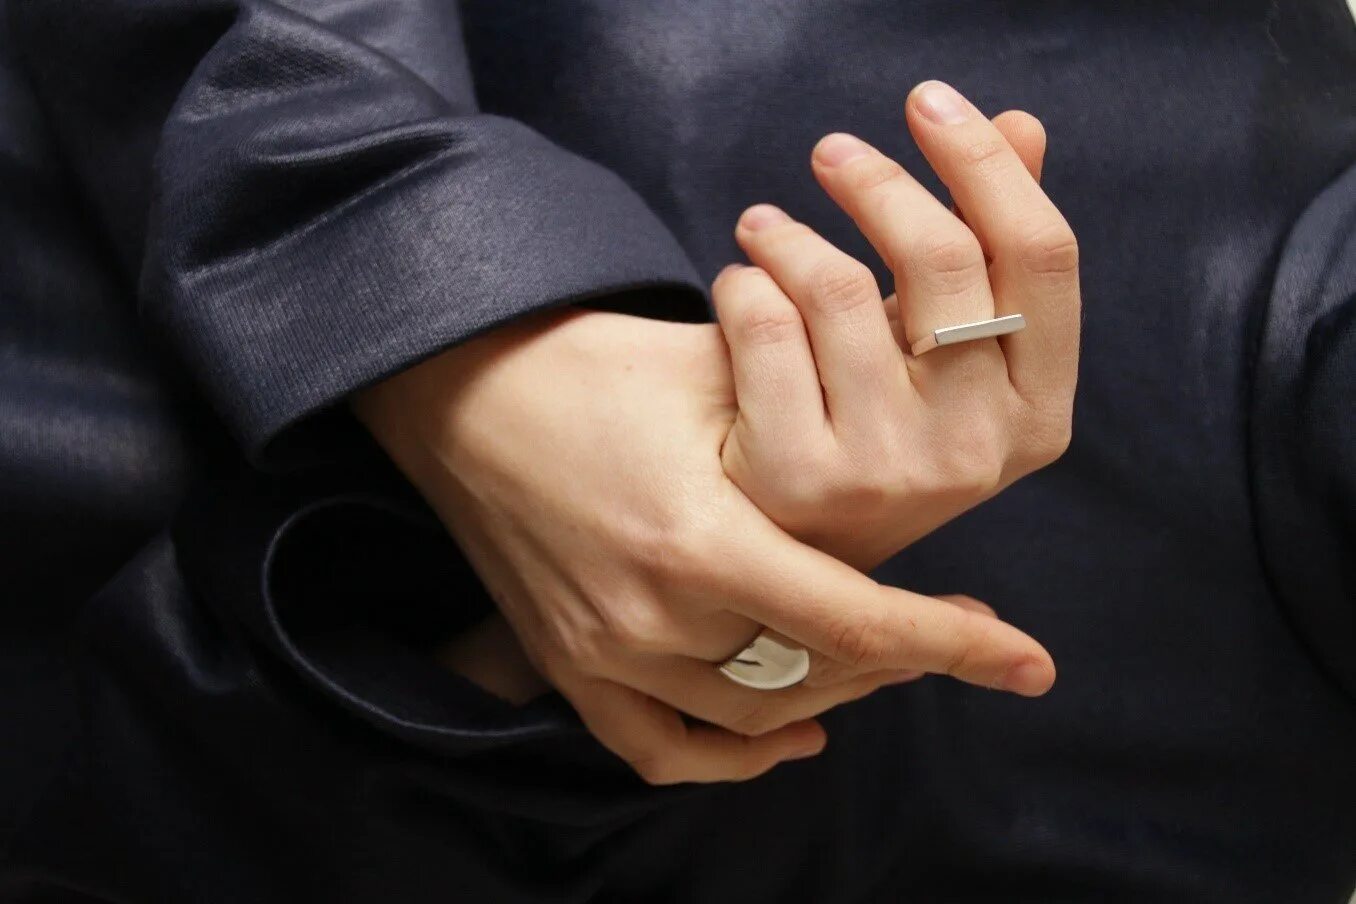 Кольцо на среднем пальце. Обручальное кольцо на пальце. Мужские обручальные кольца на руке. Мужское обручальное кольцо на пальце. Сон одели кольцо золотое кольцо